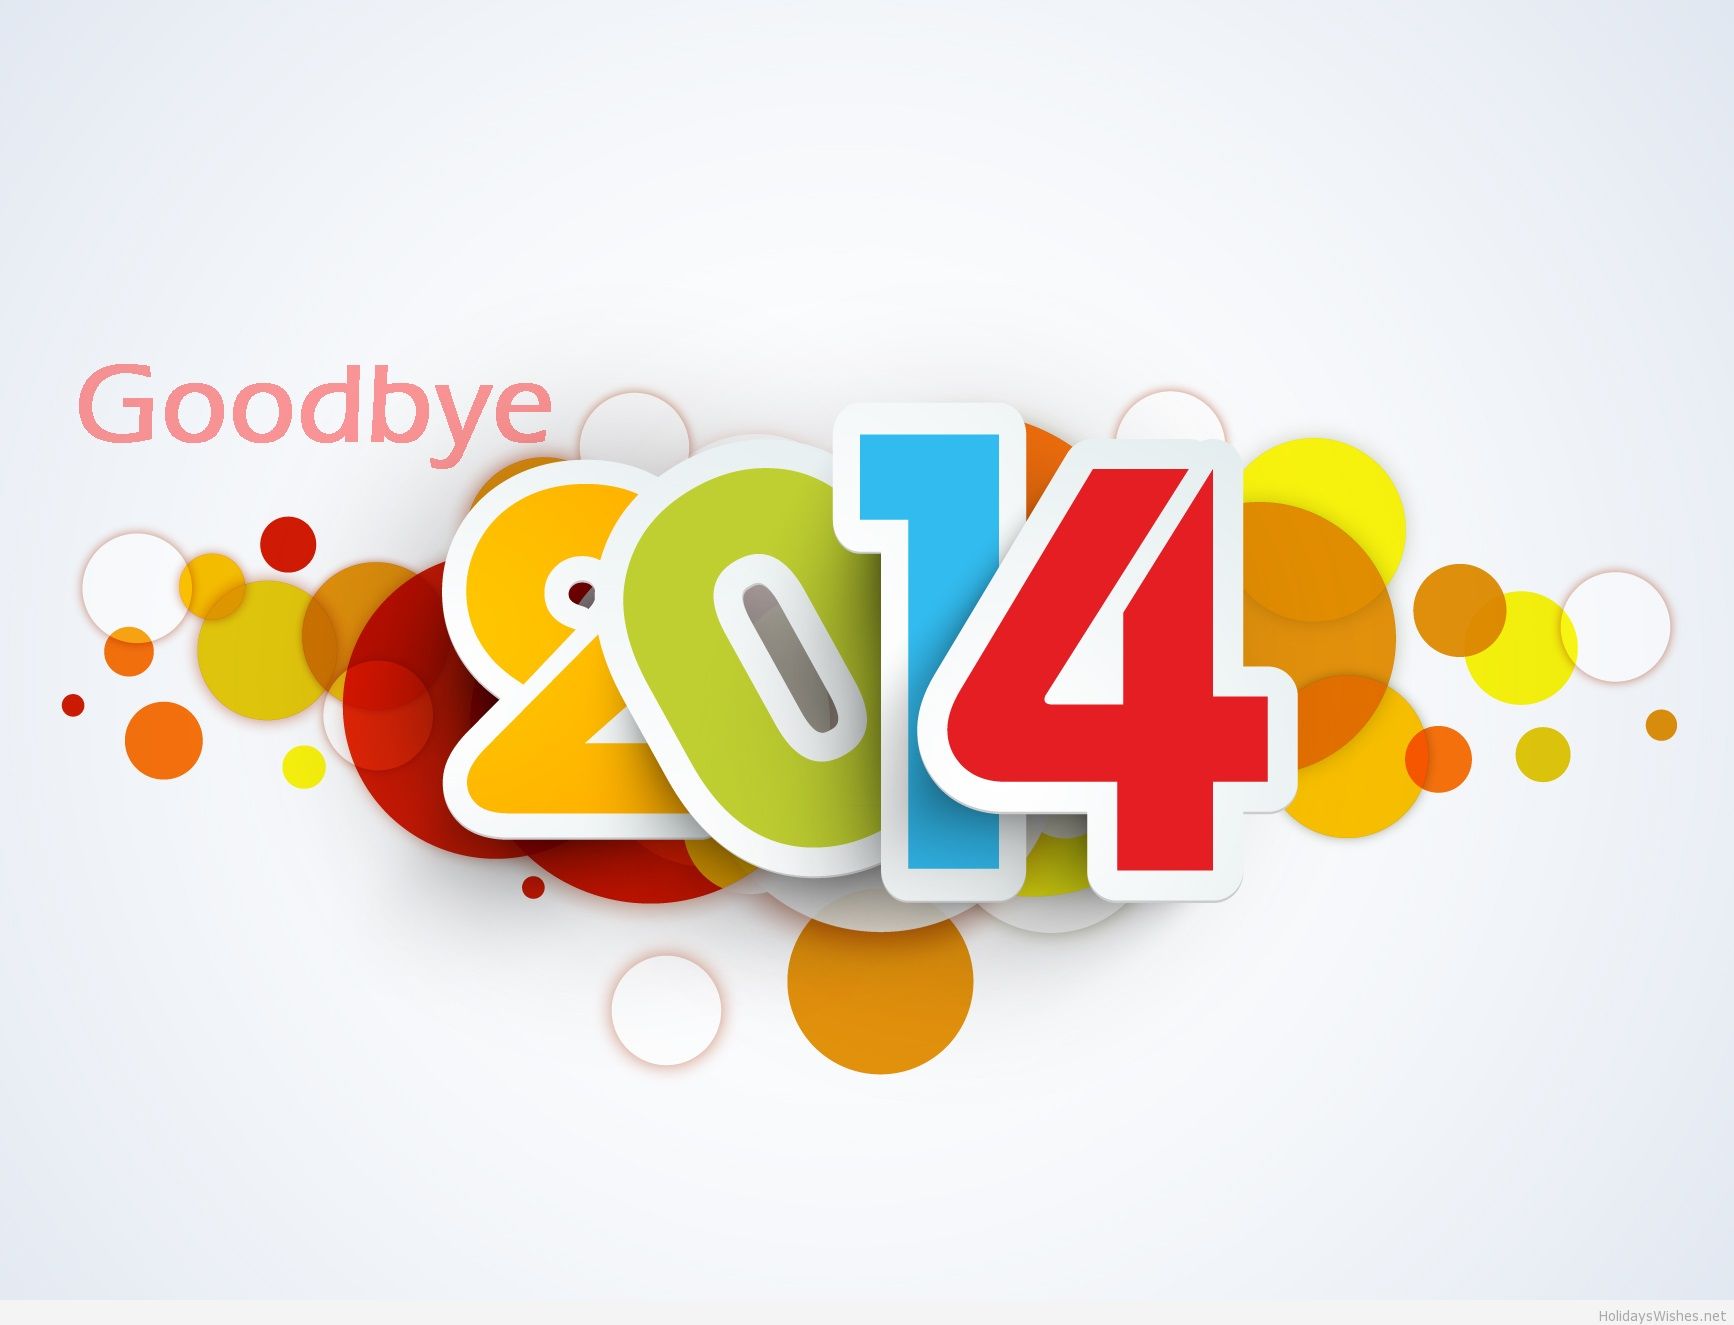 Goodbye 2014 Hd Image